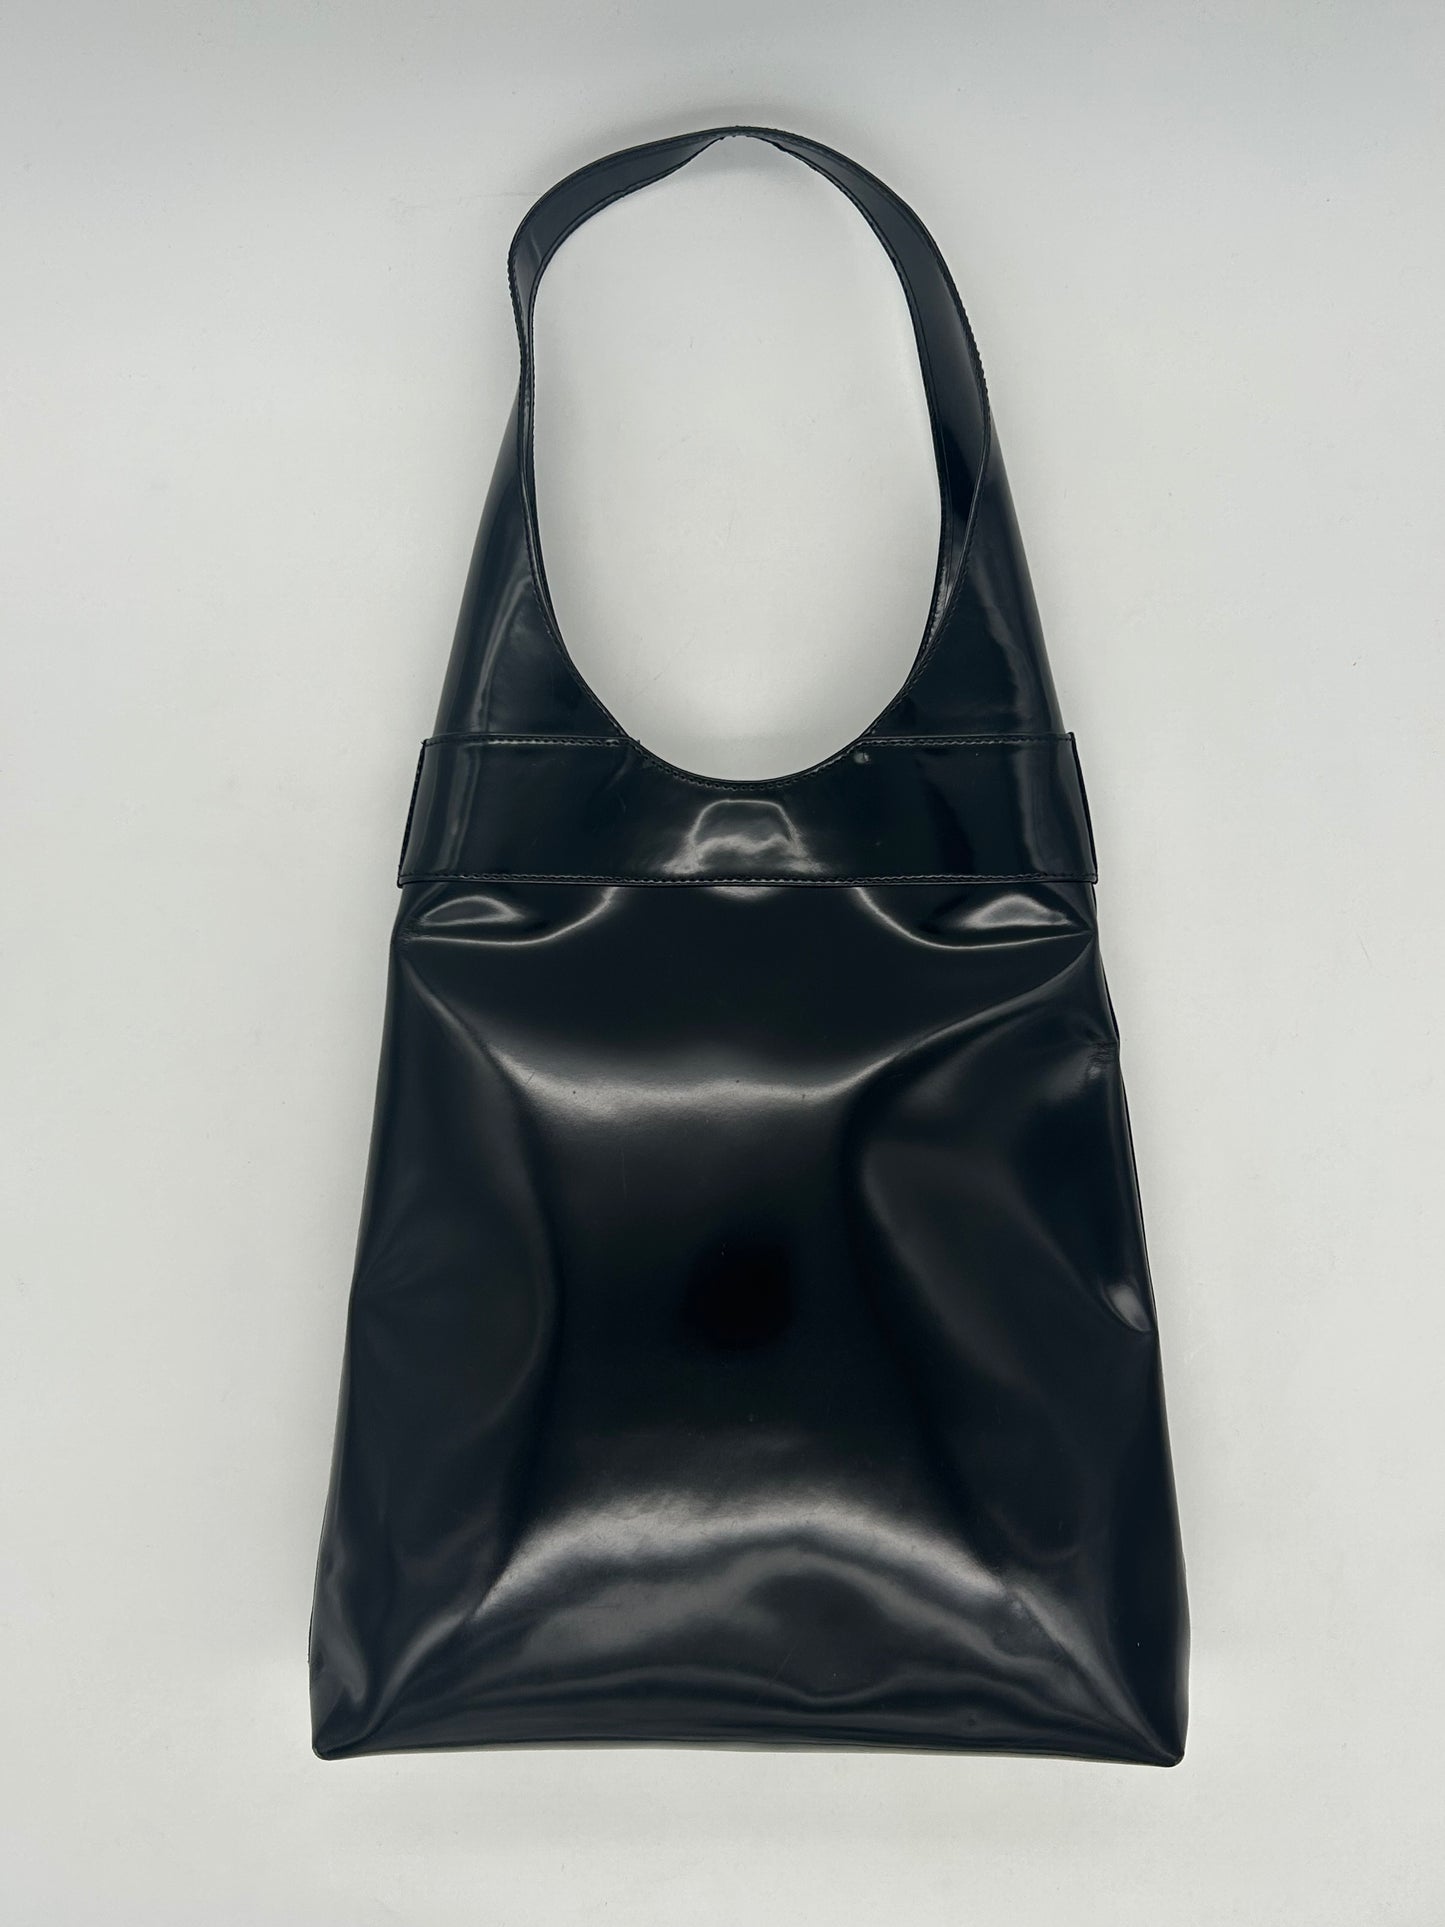 Patent Leather Shoulder Bag